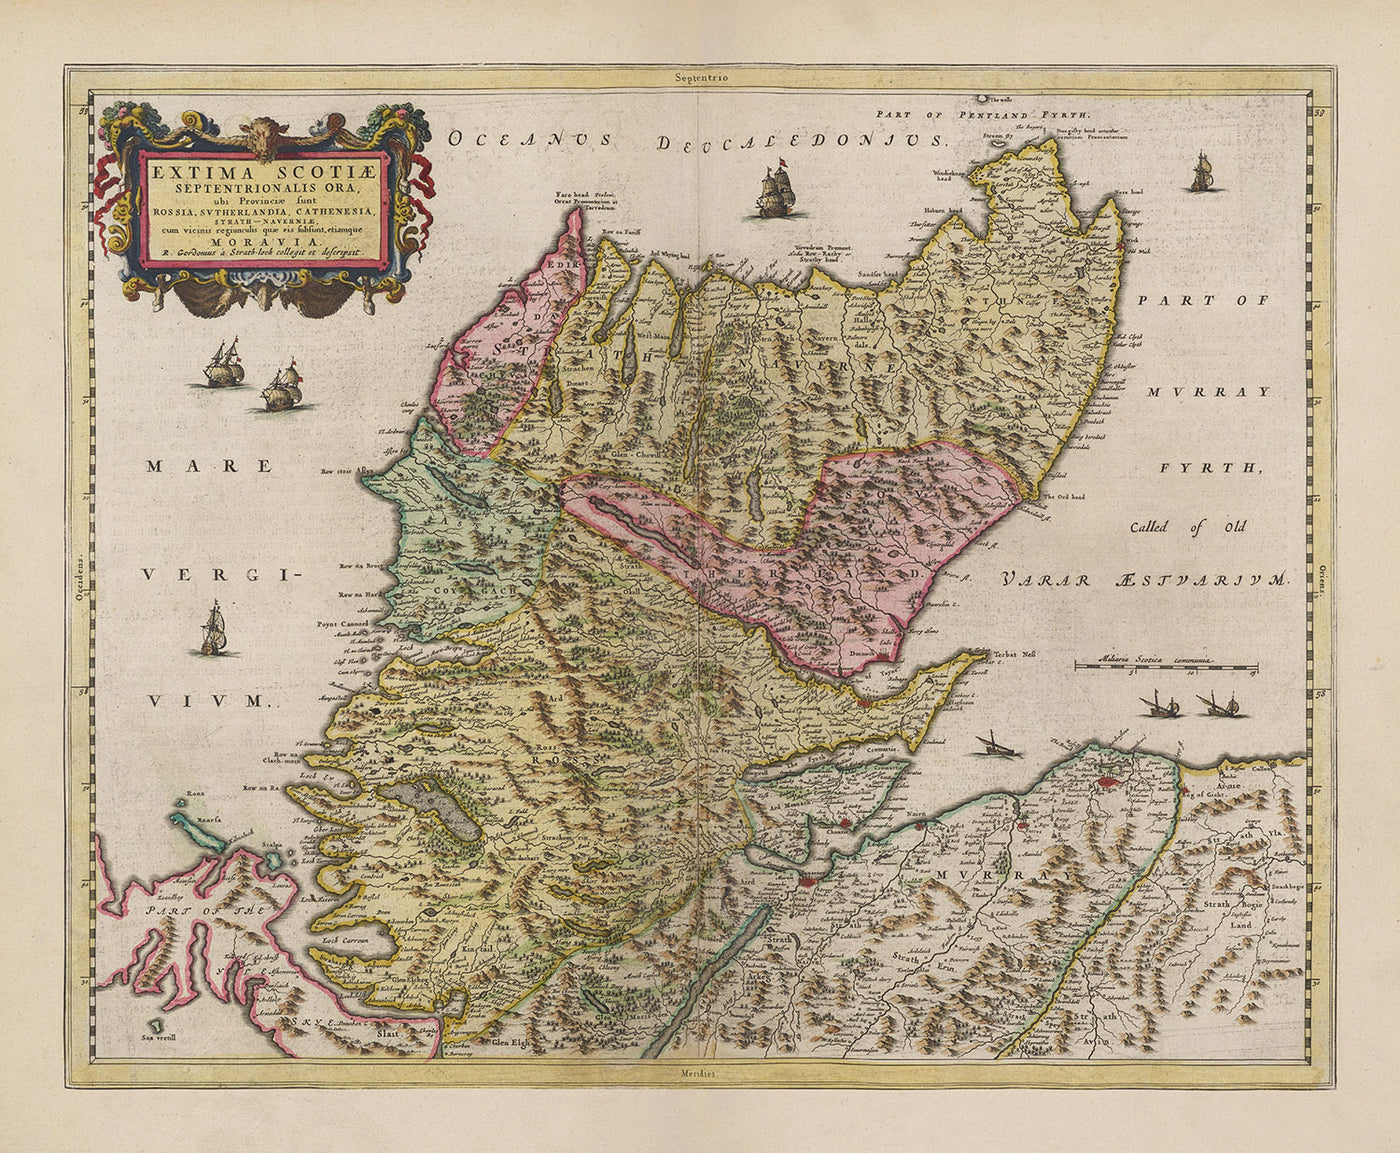 Antiguo mapa de las Highlands escocesas, 1665 por Blaeu - Caithness, Sutherland, Ross, Nairn, Inverness, Moray